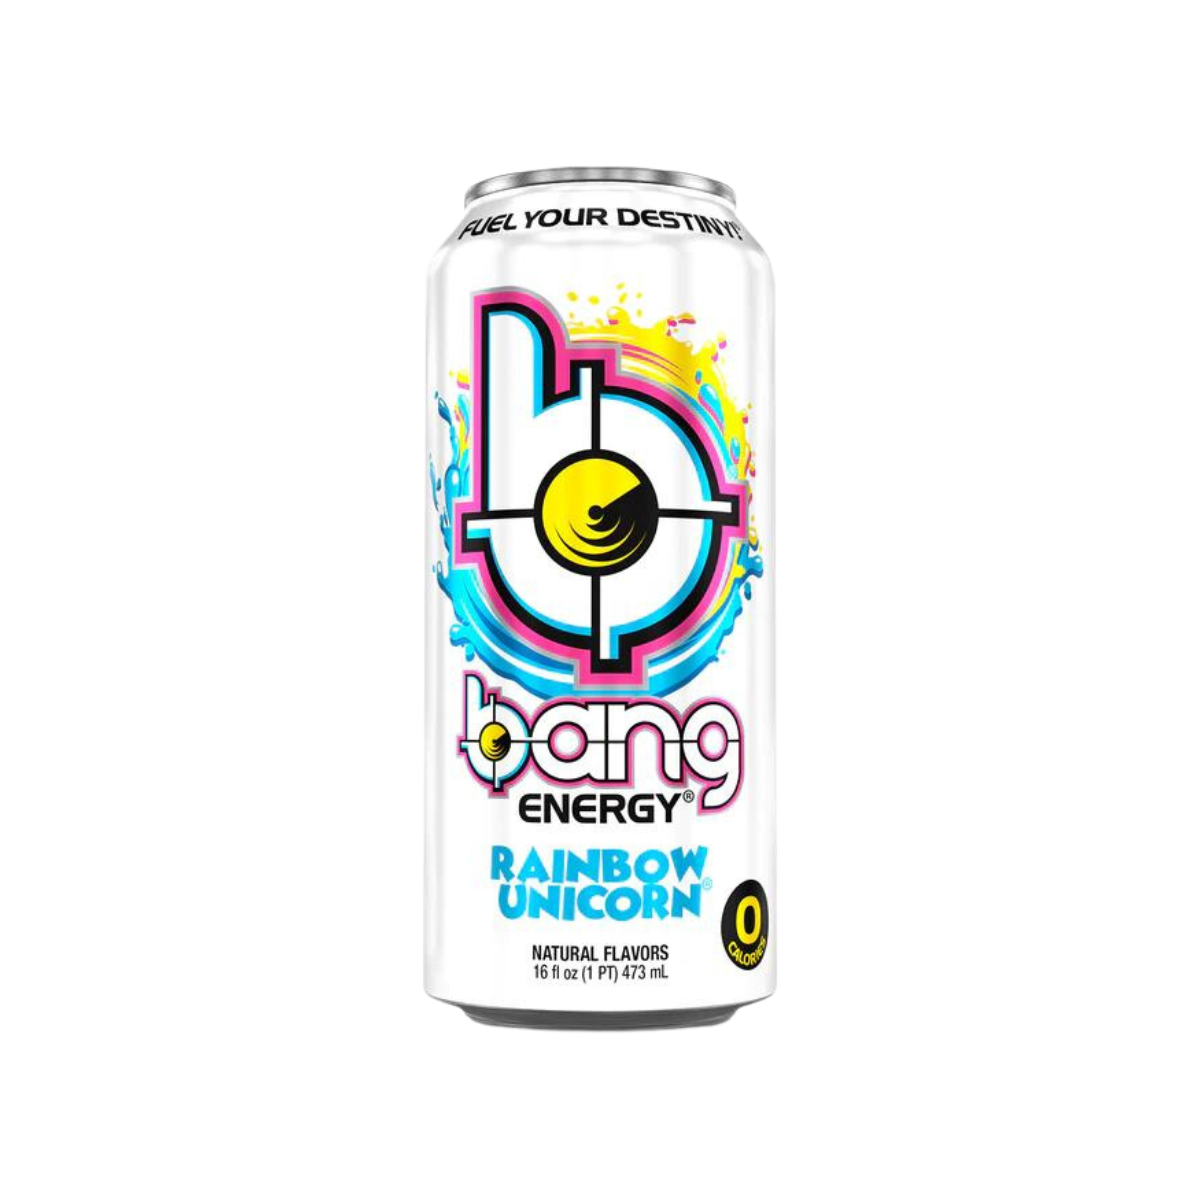 Rainbow Unicorn | Suncoast Beverage Sales